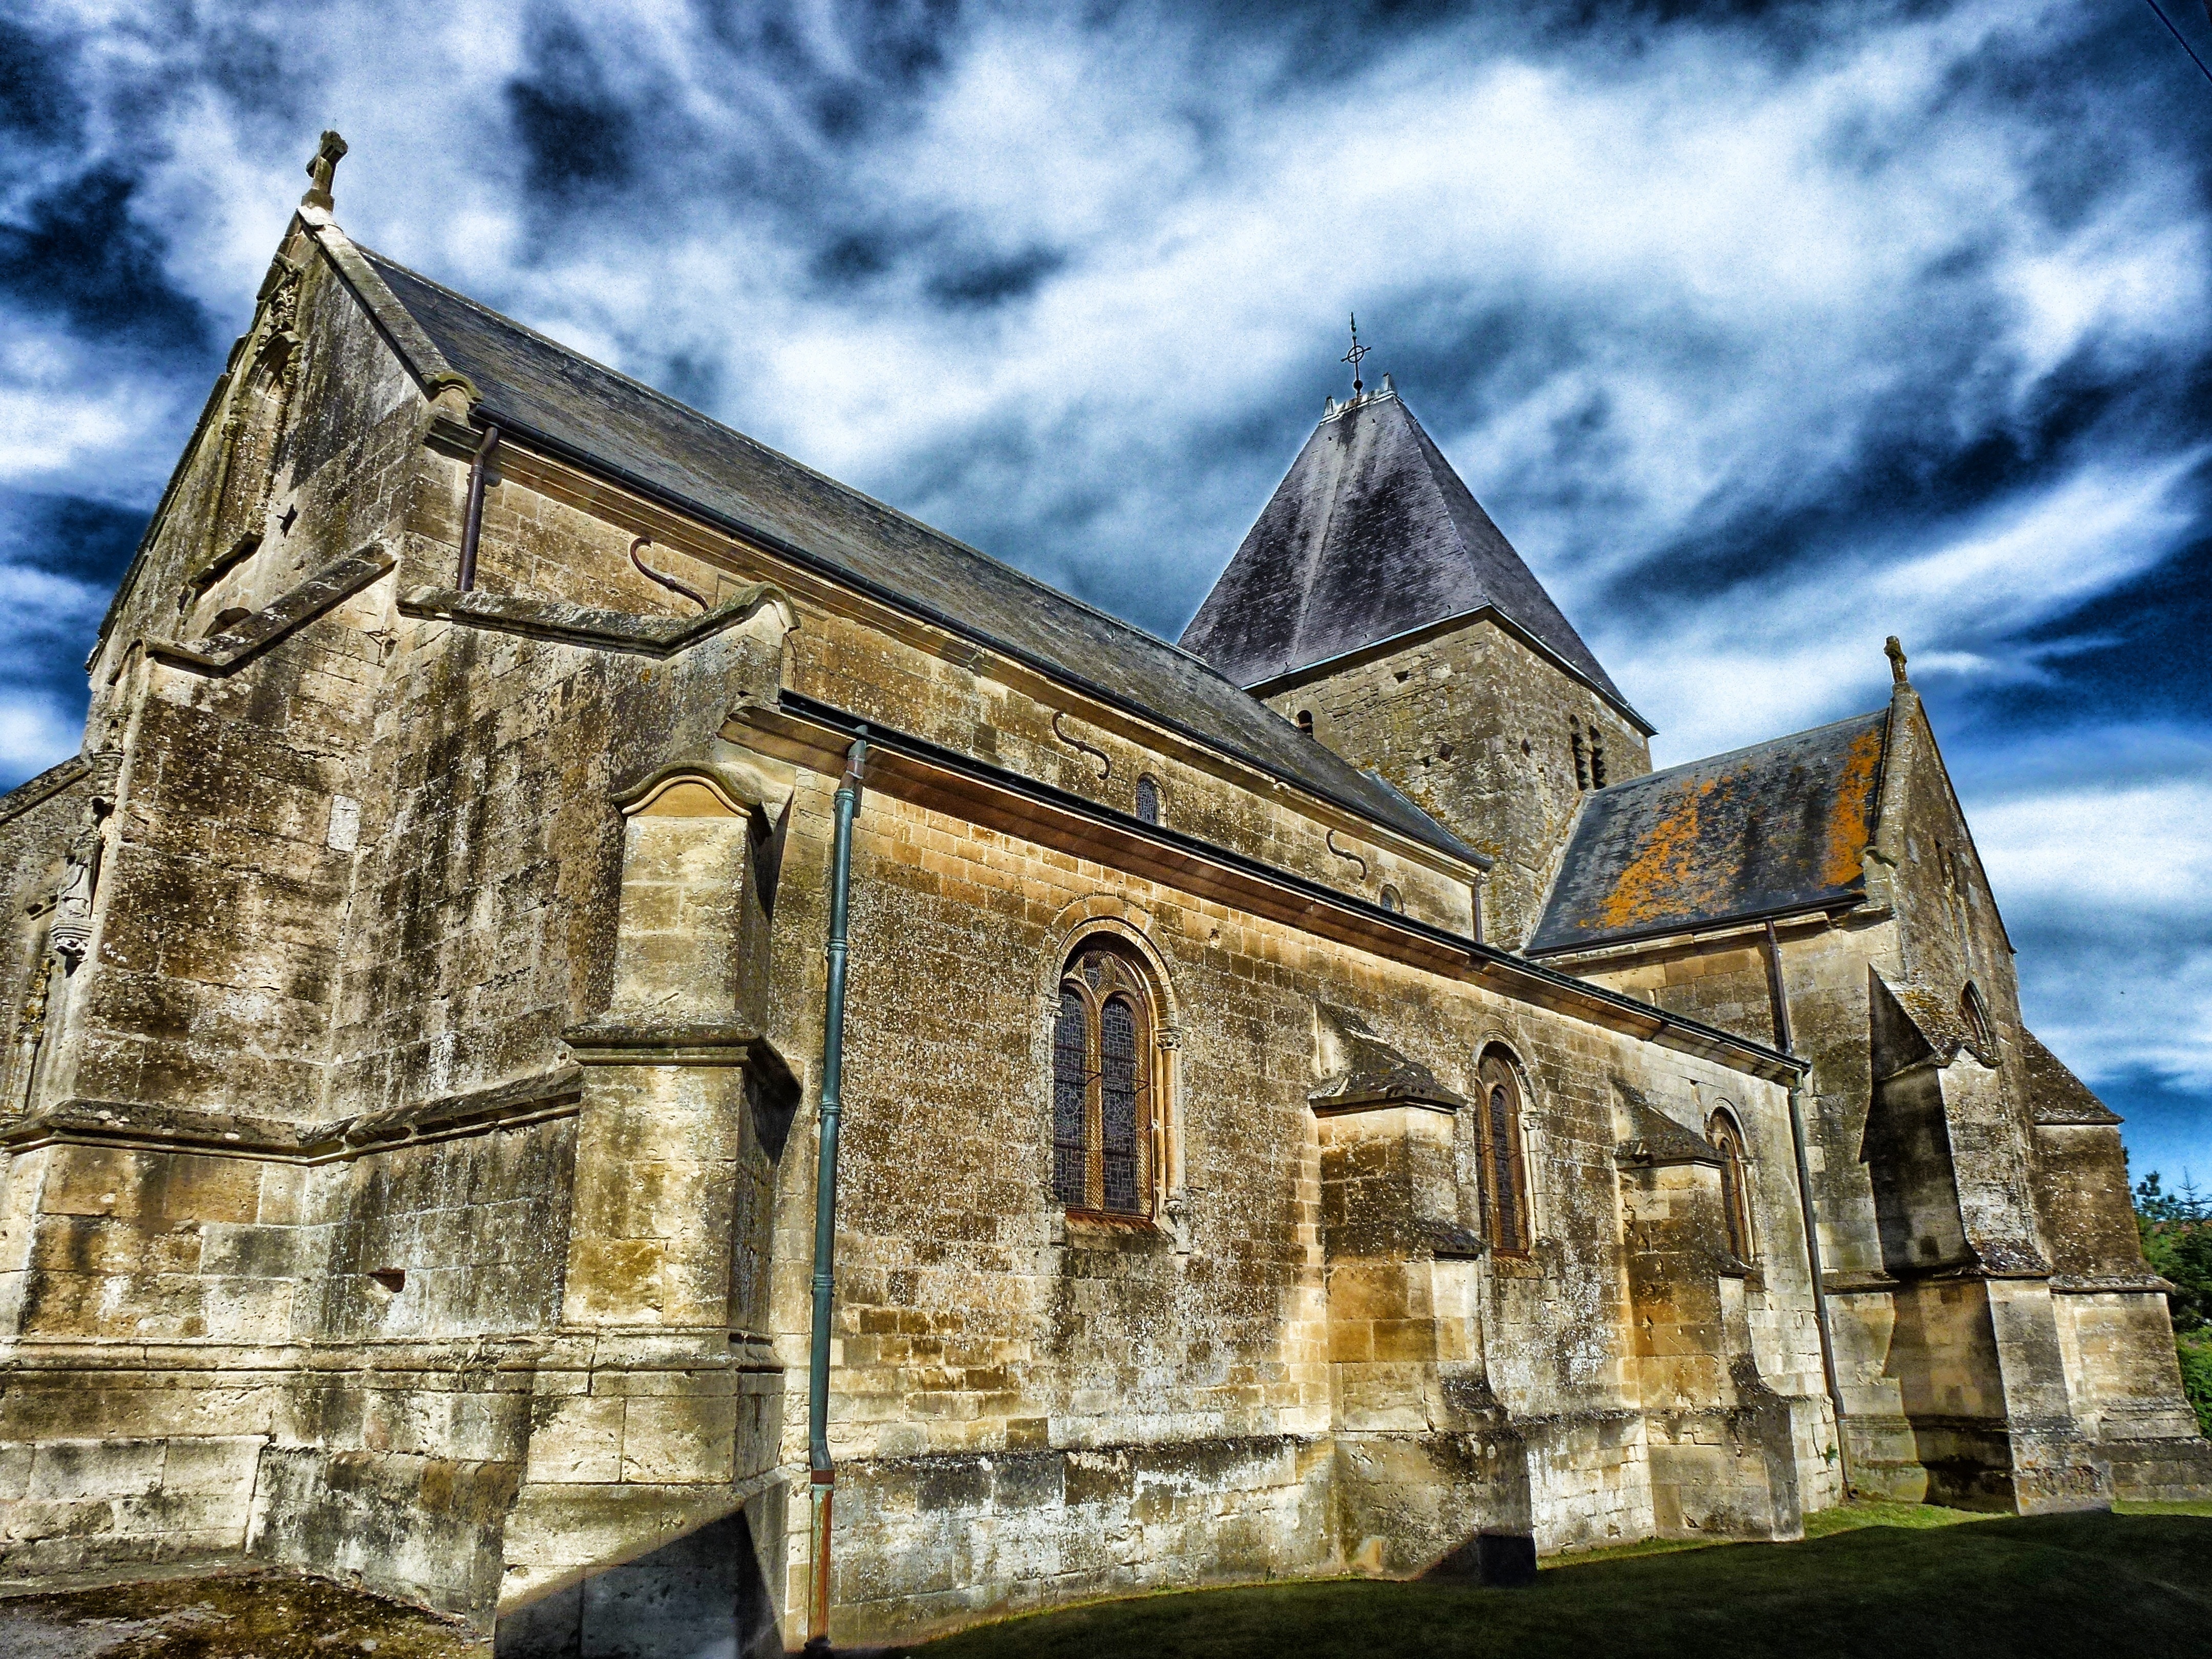 Church, Ardennes, Building, France, cloud - sky, history